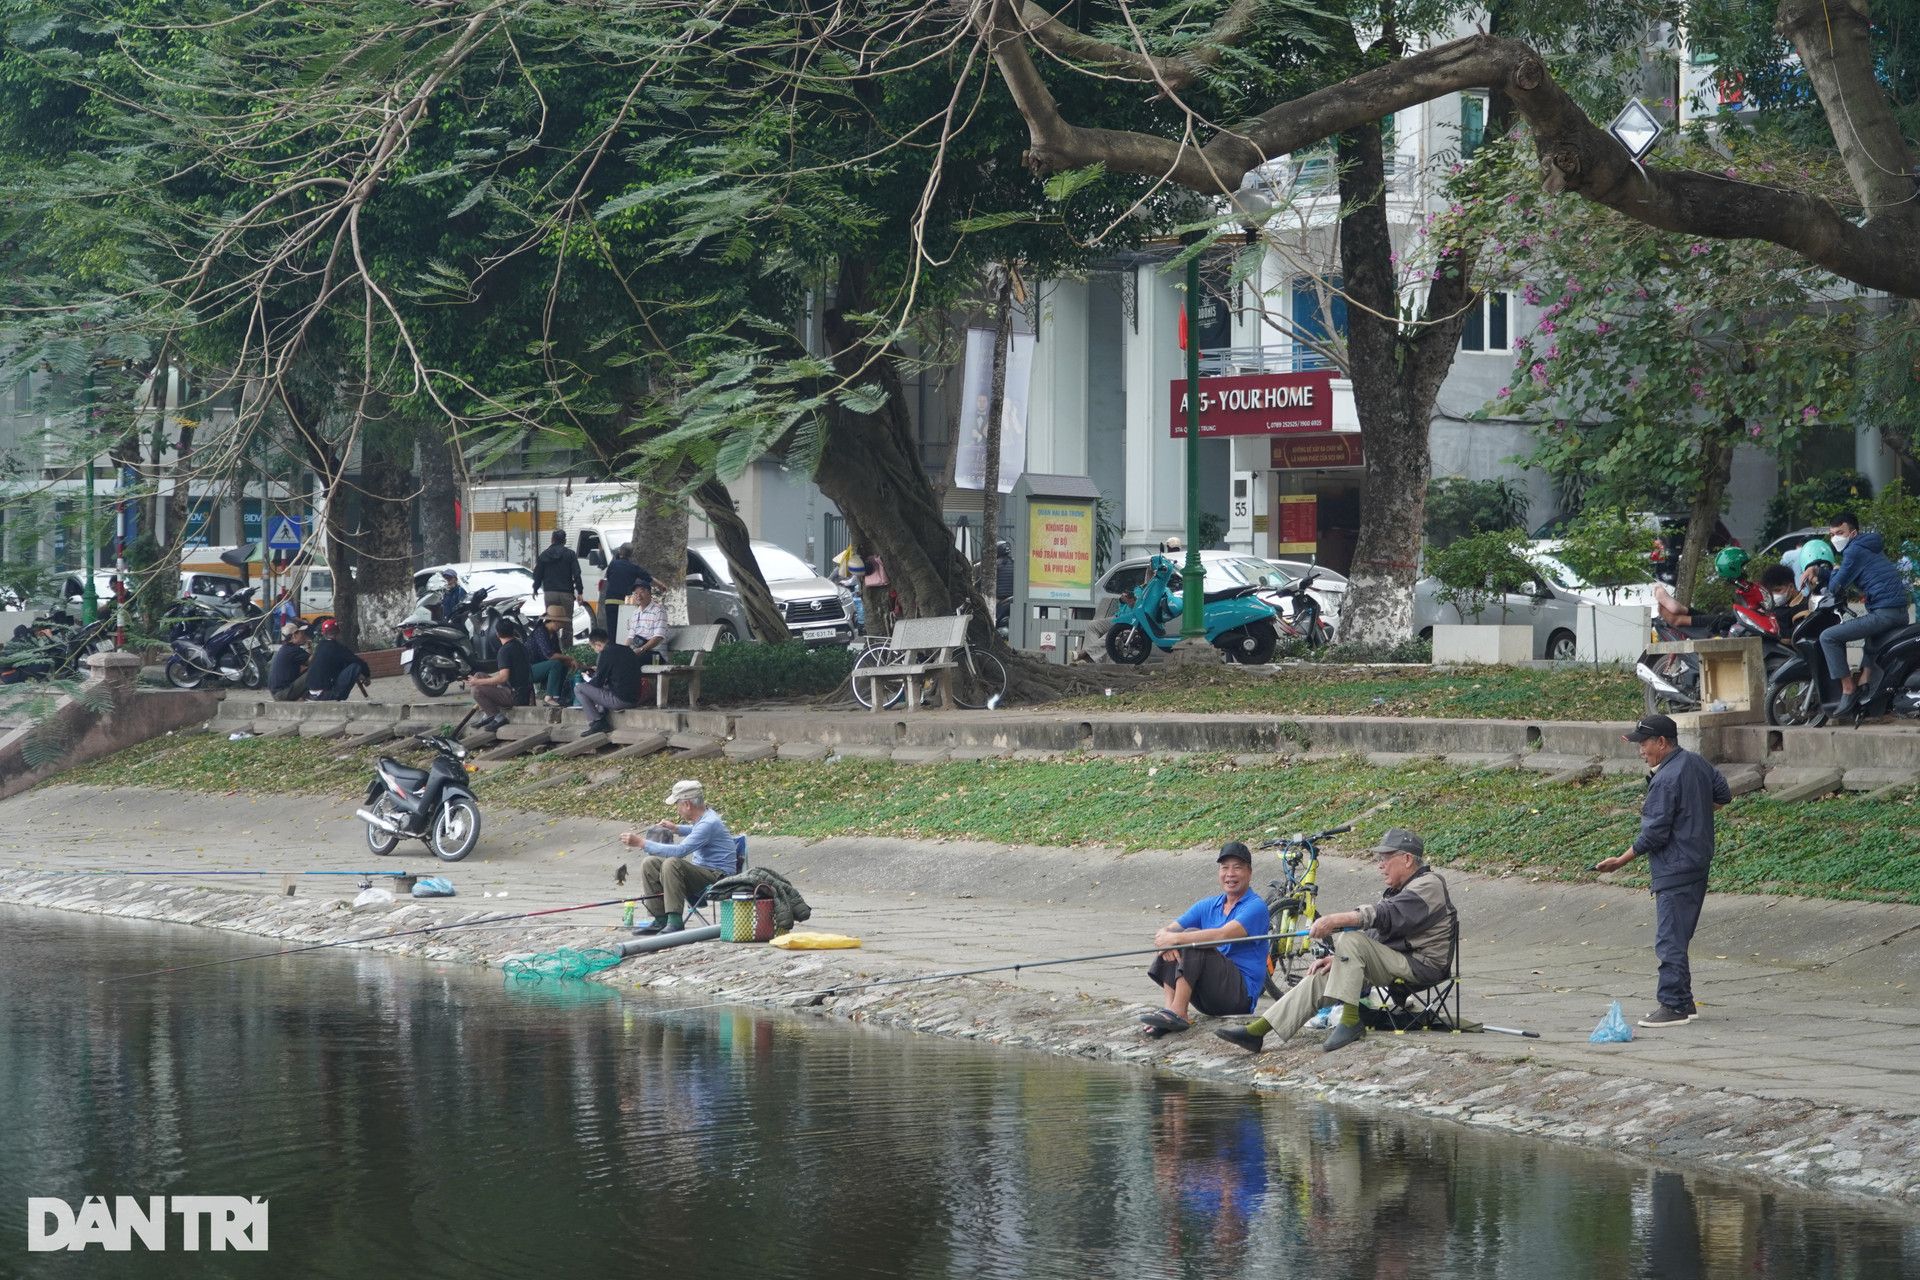 Hồ Thiền Quang có gì trước đề xuất làm 5 quảng trường xung quanh? - 10